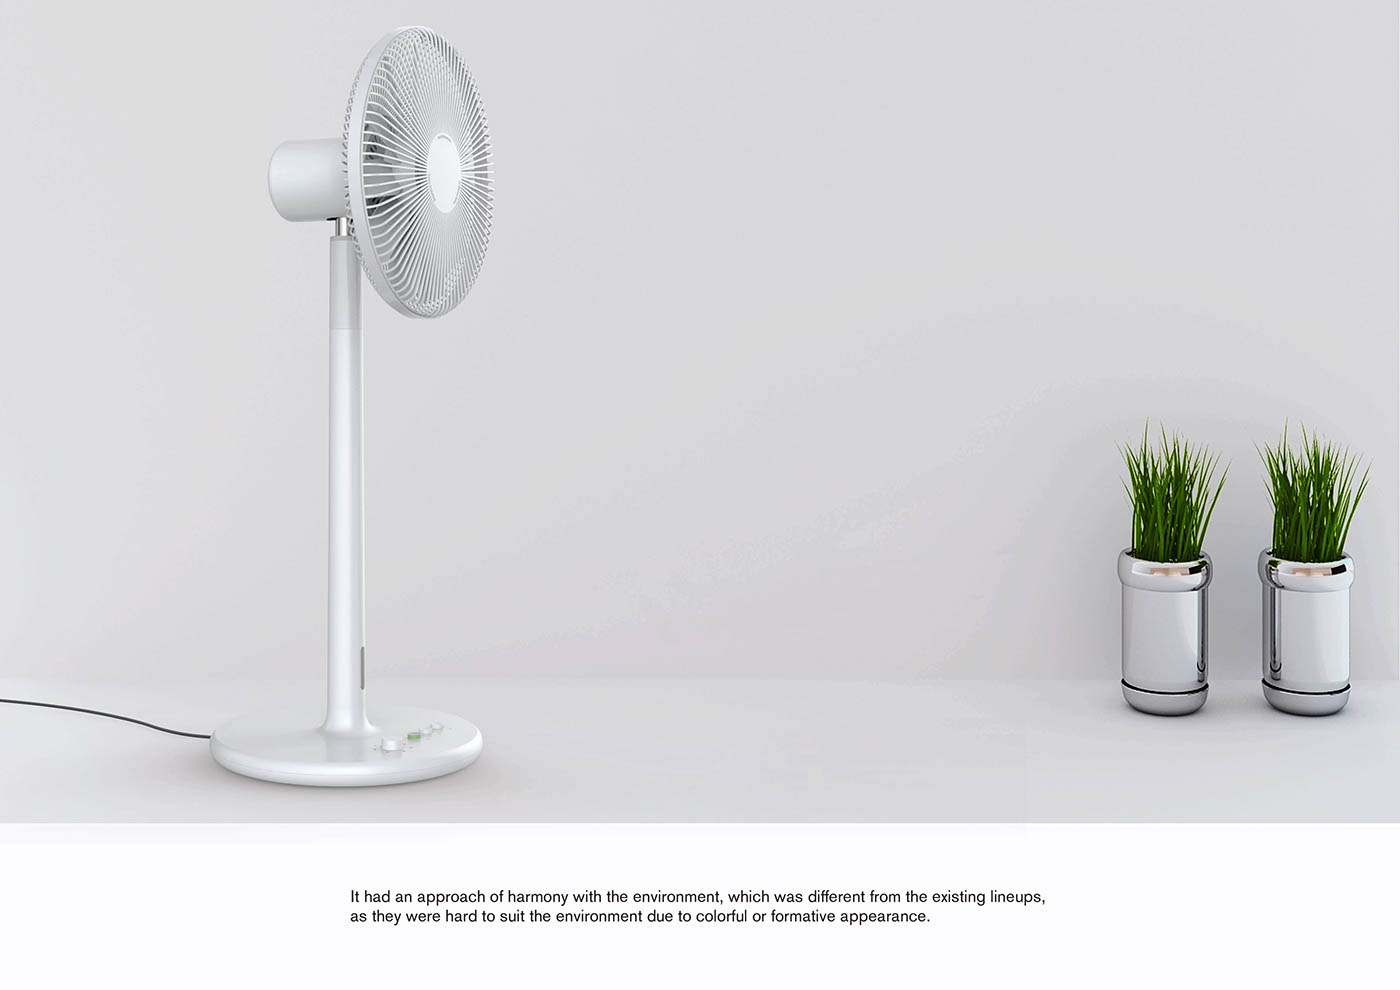 산업디자인 제품디자인 productdesign industrialdesign sketch braun Dieter Rams electric fan fan 선풍기